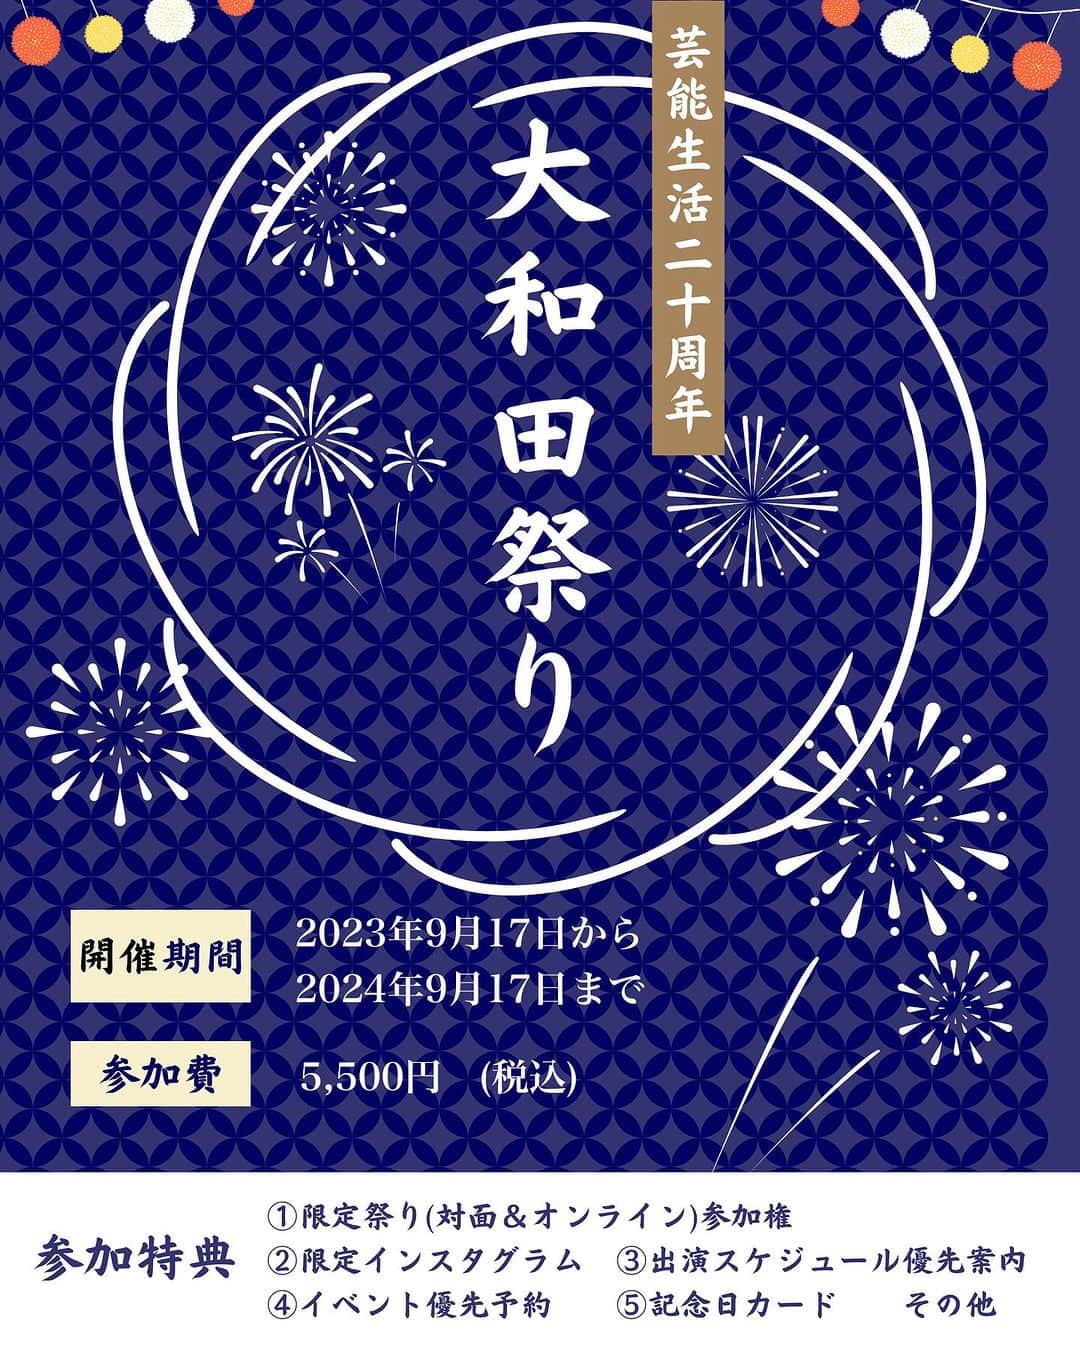 大和田美帆のインスタグラム：「.  ☆大和田美帆デビュー20周年記念☆ #大和田祭り 開催決定！  １日限りのイベントではありません 1年間，毎日を祭りのように過ごすイベントです。  ミュージカル「PURE LOVE」でヒロインデビューしてから今年9月で20年。 大和田美帆を支えてくださる皆様への感謝の気持ちを込めて、またこれからも応援していただけるよう20周年をみなさんと一緒に喜び、楽しみ、繋がる #大和田祭り を開催することになりました。  大和田美帆の20周年を共に祝いたい！もしくは大和田美帆を応援したい！ハリーポッターを一緒に盛り上げたい！  と思ってくださる皆様のご参加をお待ちしております。  参加して良かった！と思っていただけるような特典を準備しております。この一年、毎日が祭りのような日々を一緒に過ごしましょう！  【祭り期間】 2023年9月17日〜2024年9月17日　 ☆ 1年限定！ (8月10日〜9月16日プレお祭り期間)  【参加可能期間】 参加した日から2024年9月17日 まで 期間内いつでも参加可能。  ⭐️参加特典⭐️  ①大和田祭り（対面&オンライン）参加権 ②限定インスタグラム (他では見られない写真、動画、ライブ、ラジオをお届け) ③限定インスタグラムDM開放　(舞台の感想やメッセージを直接送信できます) ④舞台出演スケジュール情報の先行案内 ⑤チケット優先予約　 (パレアナ扱いのみ。ミホステ・ここから等含む) ⑥記念日カード (誕生日クリスマスなどご希望の記念日に直筆カードが届きます)  ほか。  【祭り参加費】　 5,500円(税込)   ✅【参加方法】   ＜ステップ①＞  まず初めに、こちらのメールアドレスに下記項目(８個)をご記入の上、メール送付をお願い致します。   ohwada.matsuri@gmail.com   ［メール送付項目］ ♢ご氏名（ふりがな必須）  ♢郵便番号  ♢ご住所  ♢日中ご連絡可能なお電話番号  ♢インスタグラムアカウント名 　(アカウントをお持ちでない場合、お作りいただけますと、より大和田祭りを楽しんでいただけます。)  ♢ご希望の記念日 　(2024年9月17日までの日付)  ♢記念日の内容 　(例：誕生日、観劇記念日など）  ♢宜しければ20周年を迎える大和田美帆へメッセージをお願い致します。本人の励みになります！   ＜ステップ②＞　  お祭りスタッフから振込先などを記載したメールが届きます。（※自動返信）   ＜ステップ③＞  お振込ください。   ＜ステップ④＞  お振込が確認できた時点で限定インスタグラムのアカウント名と一緒に参加承認メールをお送りいたします。  以上をもって手続きが完了し、正式な【大和田祭り参加者】となります。  参加者になりますとインスタグラムで参加者様のアカウントが承認され、鍵付きの限定インスタグラムを閲覧できるようになります。  （認証が必要です。必ず限定アカウントのフォローをお願いします。)  ※大和田祭り内容や、規約、プライバシーポリシーなどを 必ずご確認の上、ご参加くださいませ。  大和田祭りにお申し込みいただいた方は、すべて規約に同意いただいたものとみなされます。  【大和田祭り】 詳細、規約、プライバシーポリシーは公式HPから www.miho-ohwada.com」